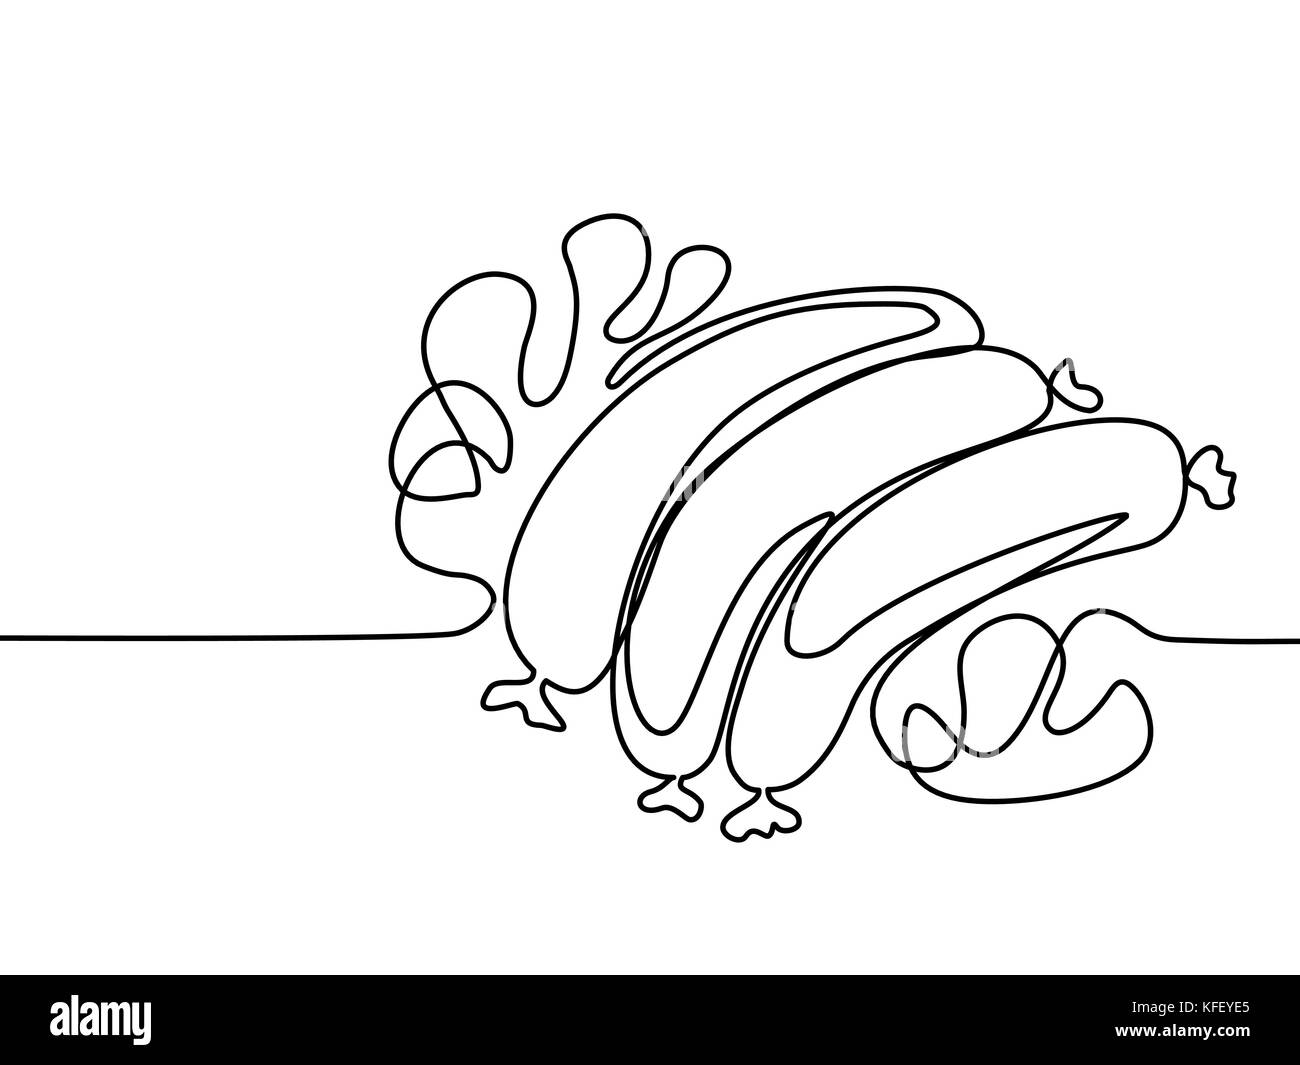 Rappresentazione in linea continua. Salsicce fritte con foglie di lattuga e funghi. Fast food. Illustrazione vettoriale con linee nere su sfondo bianco. Illustrazione Vettoriale